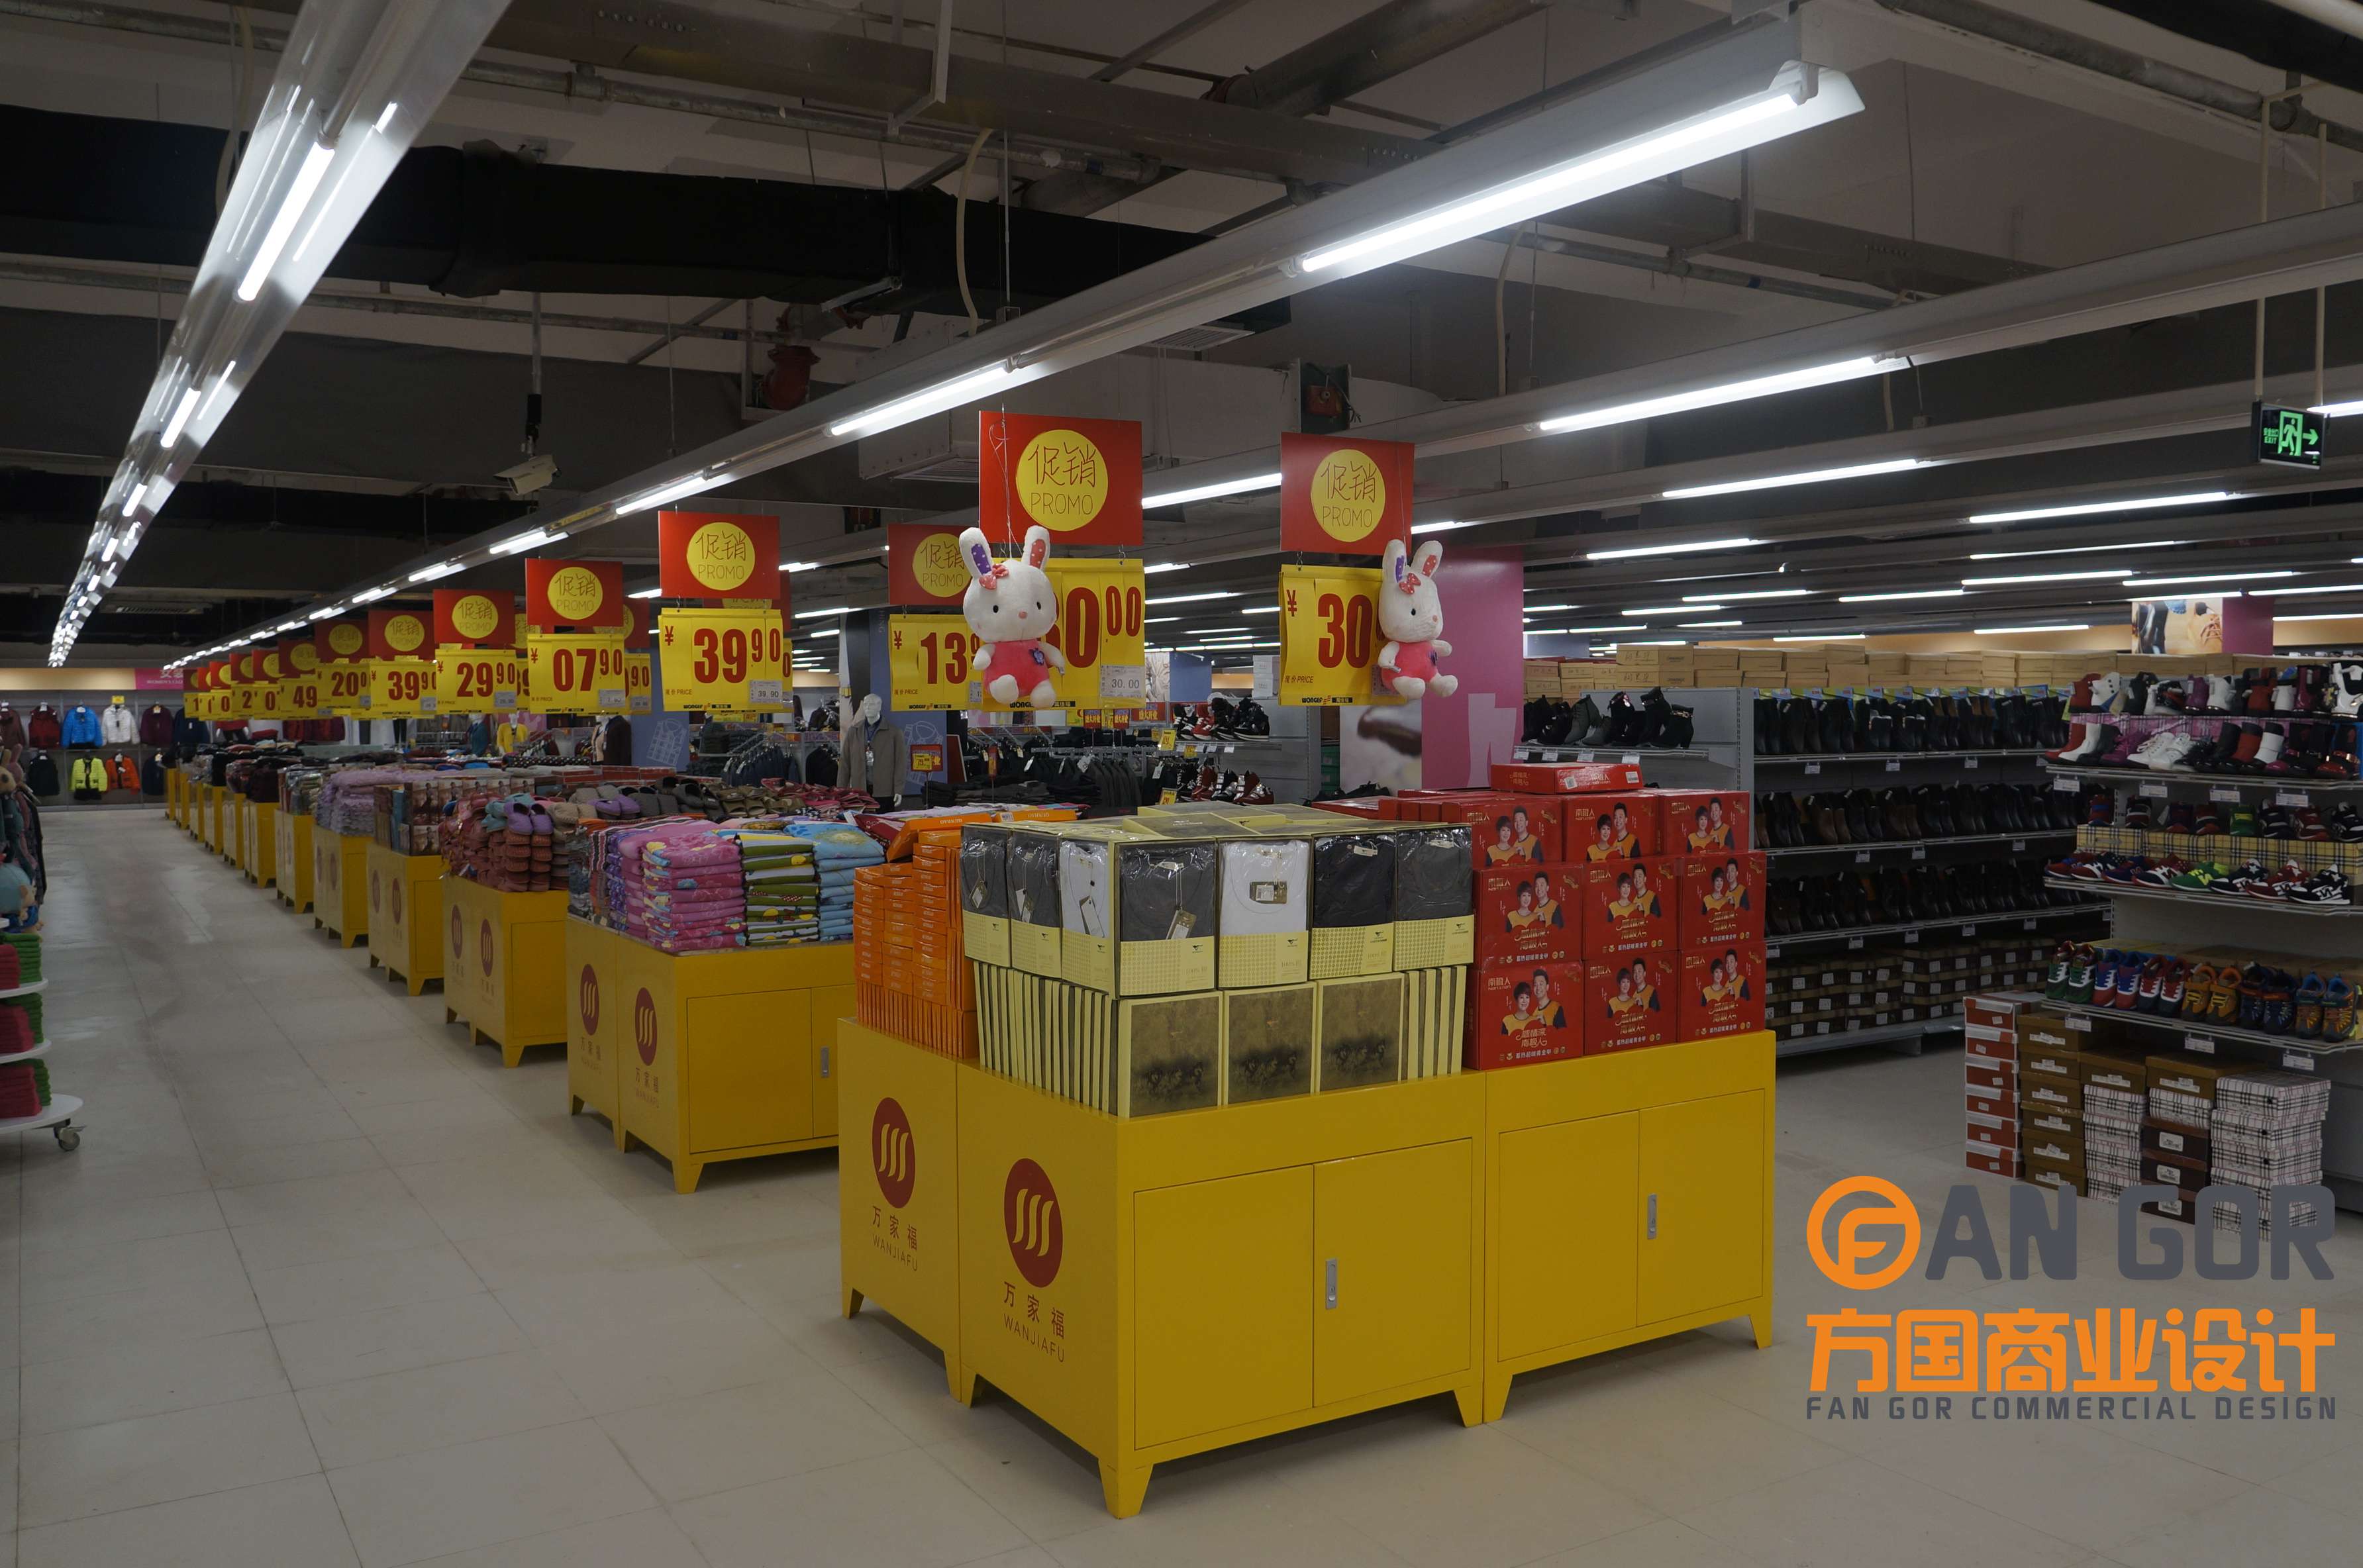 万家福超市-上海方国商业设计 - 上海方国商务咨询管理有限公司